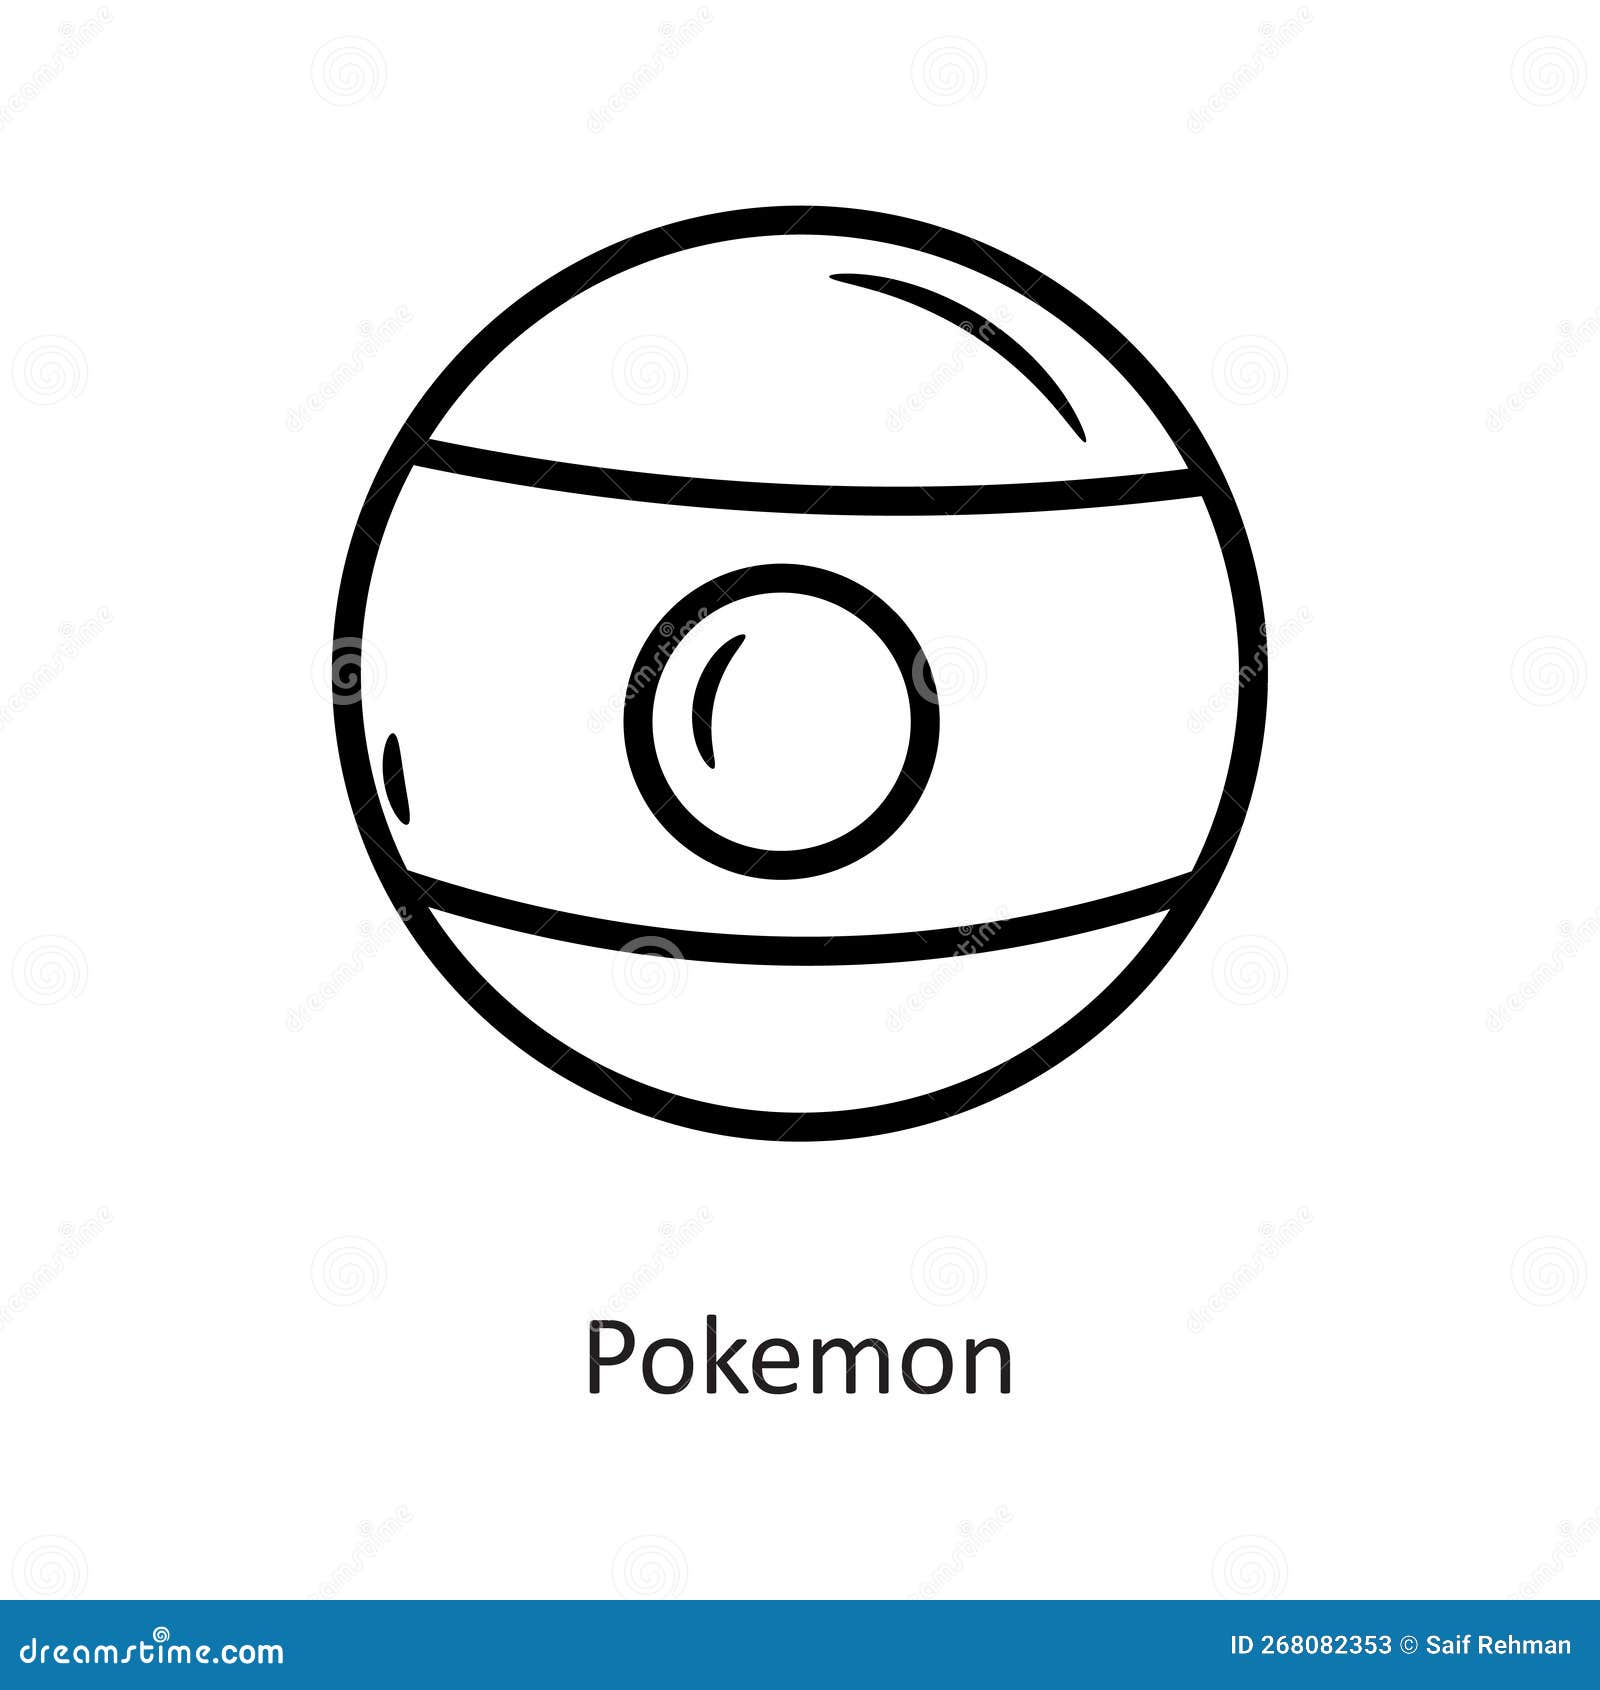 Pokeball Logo Isolated on White Background. Editorial Stock Image